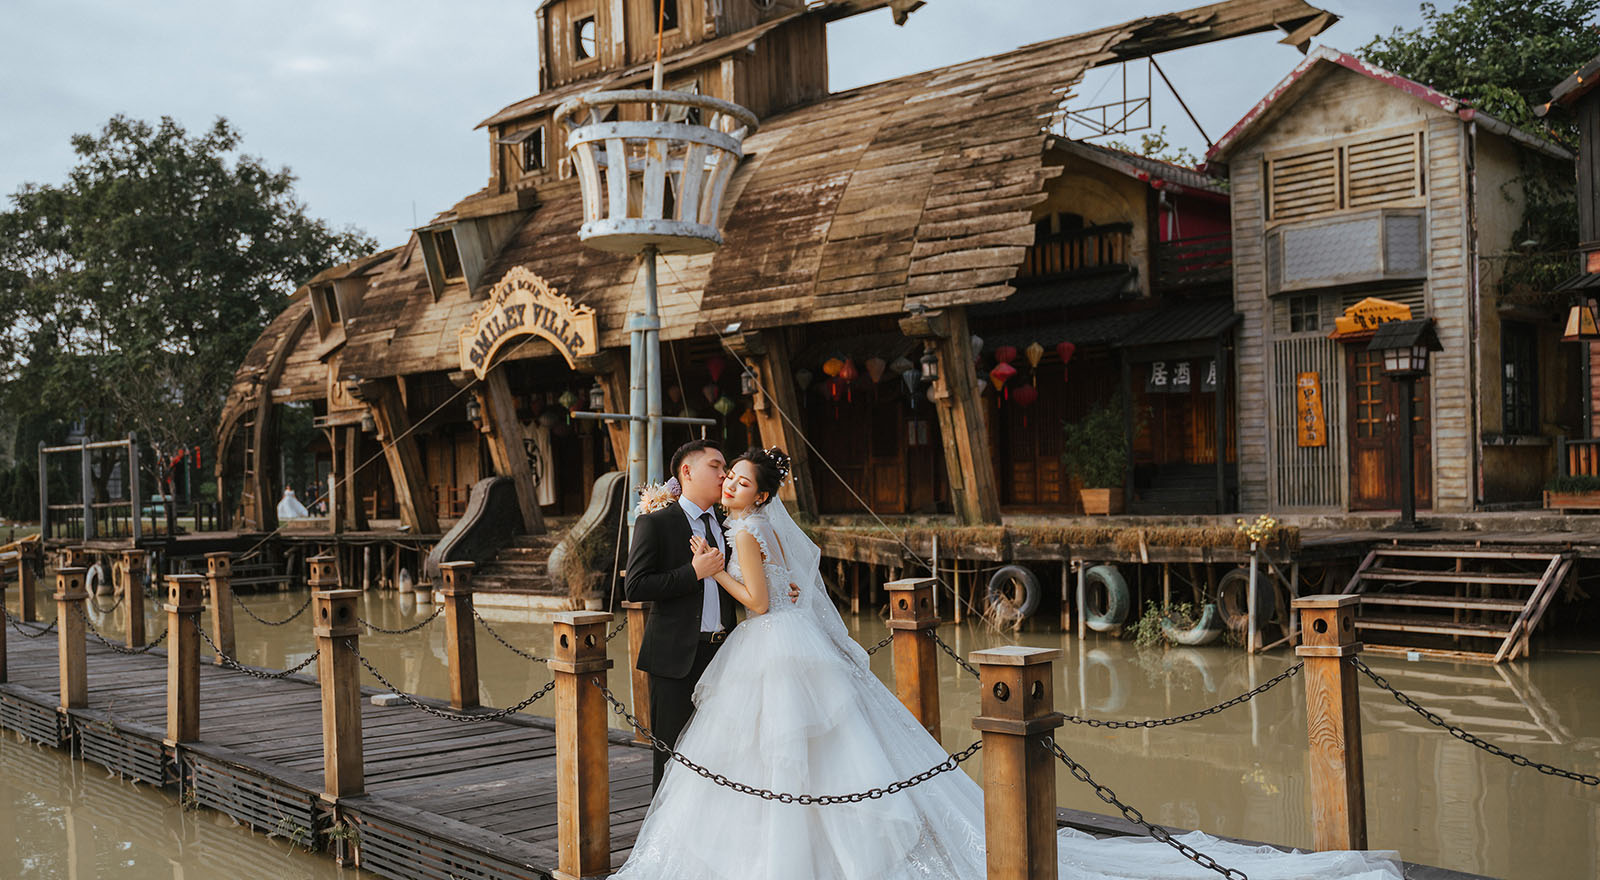 Điểm danh 10 phim trường chụp ảnh cưới ở Hà Nội nổi tiếng nhất